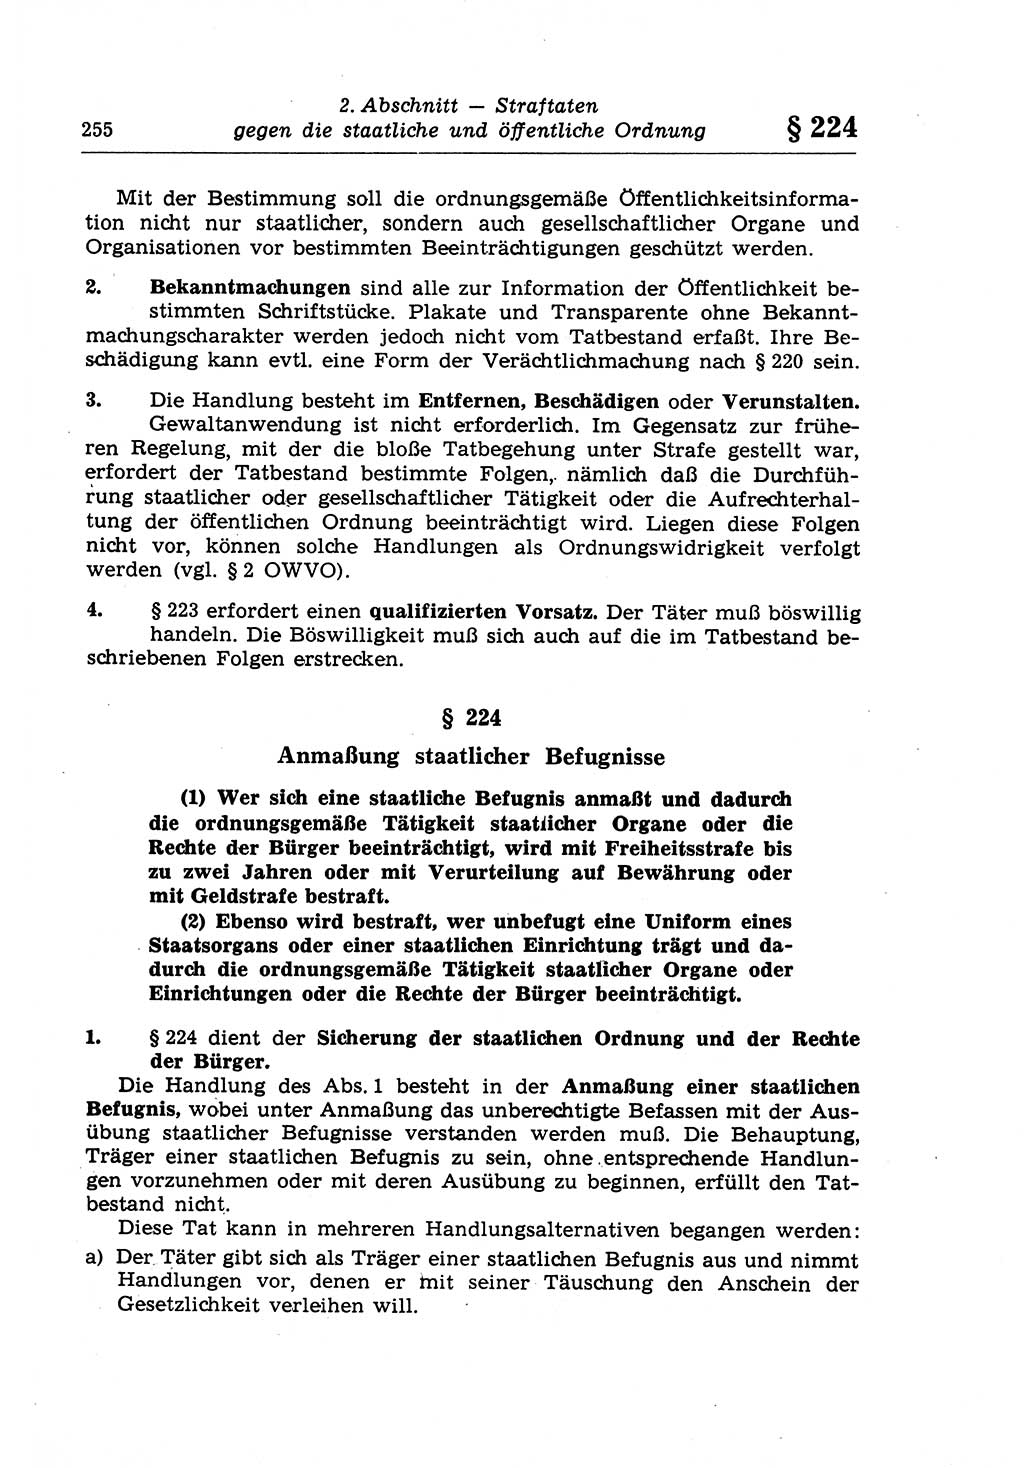 Strafrecht der Deutschen Demokratischen Republik (DDR), Lehrkommentar zum Strafgesetzbuch (StGB), Besonderer Teil 1970, Seite 255 (Strafr. DDR Lehrkomm. StGB BT 1970, S. 255)